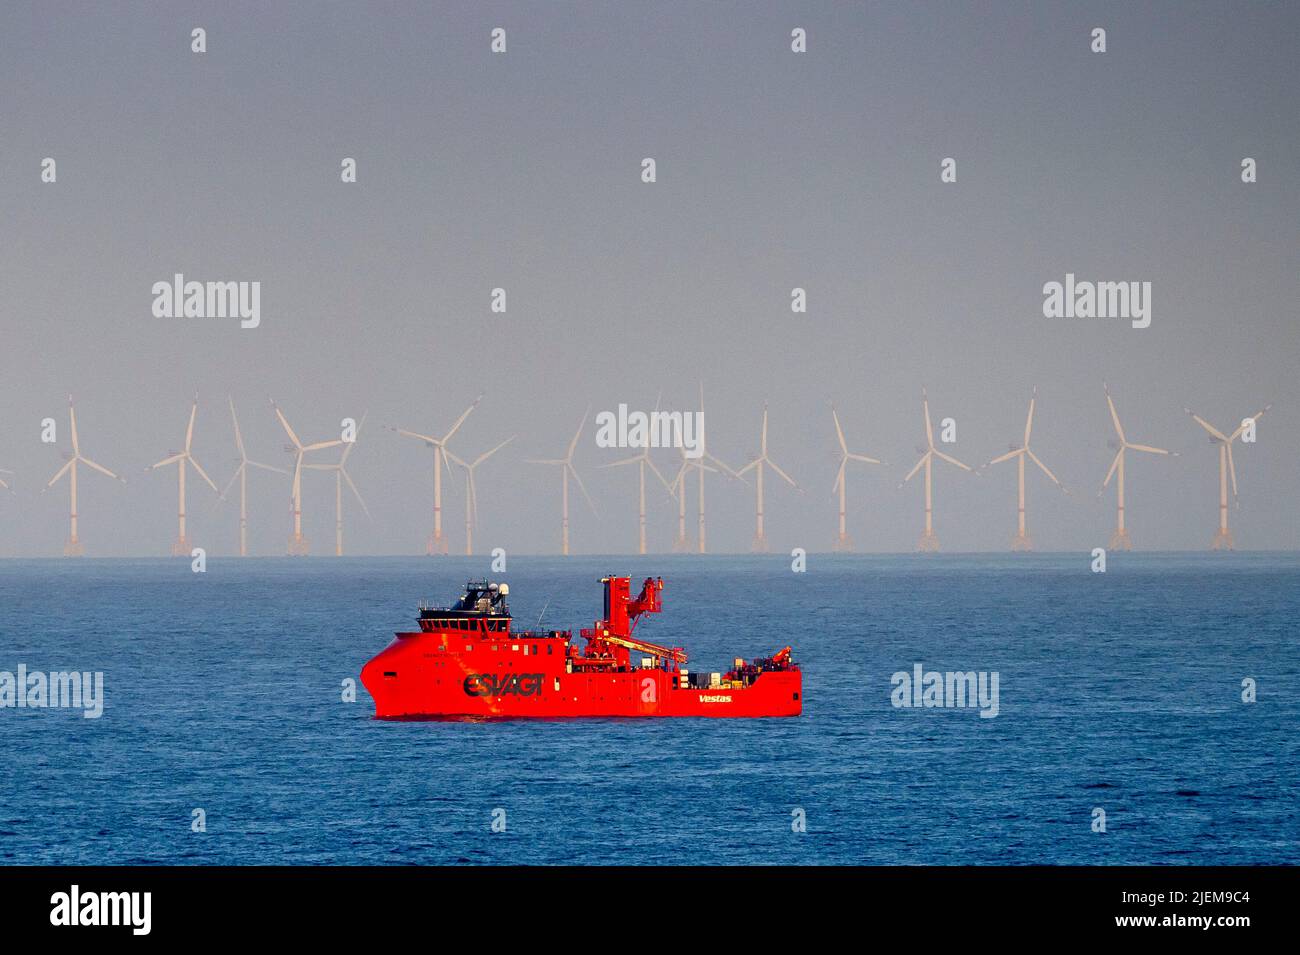 Aerogeneradores en un parque eólico marino frente a la costa de Ámsterdam. Foto de stock